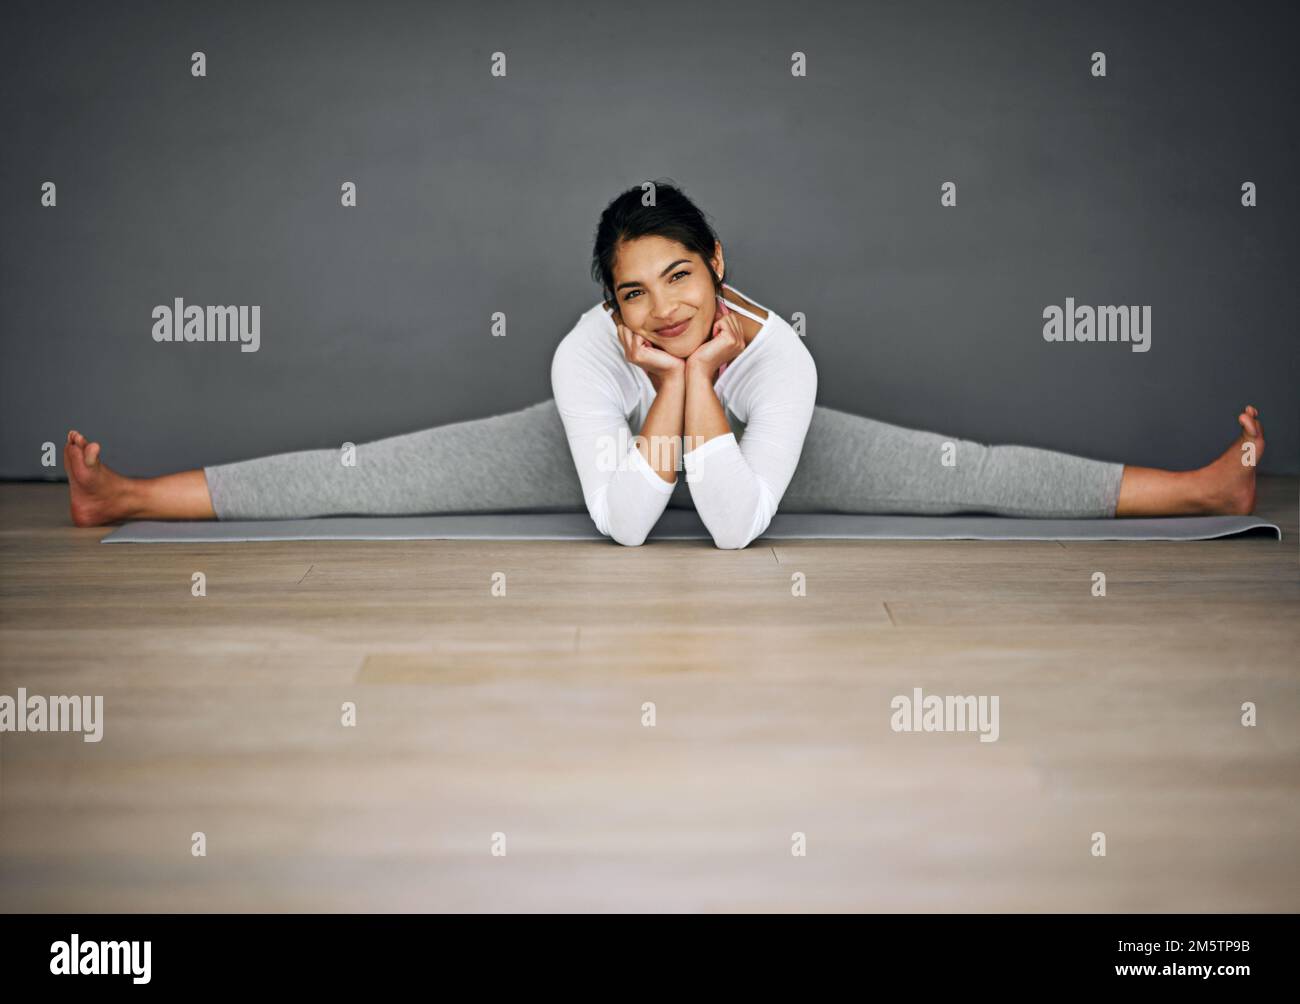 Gesundheit ist Glück. Porträt einer attraktiven jungen Frau, die die Spaltungen in ihrer Yoga-Routine macht. Stockfoto